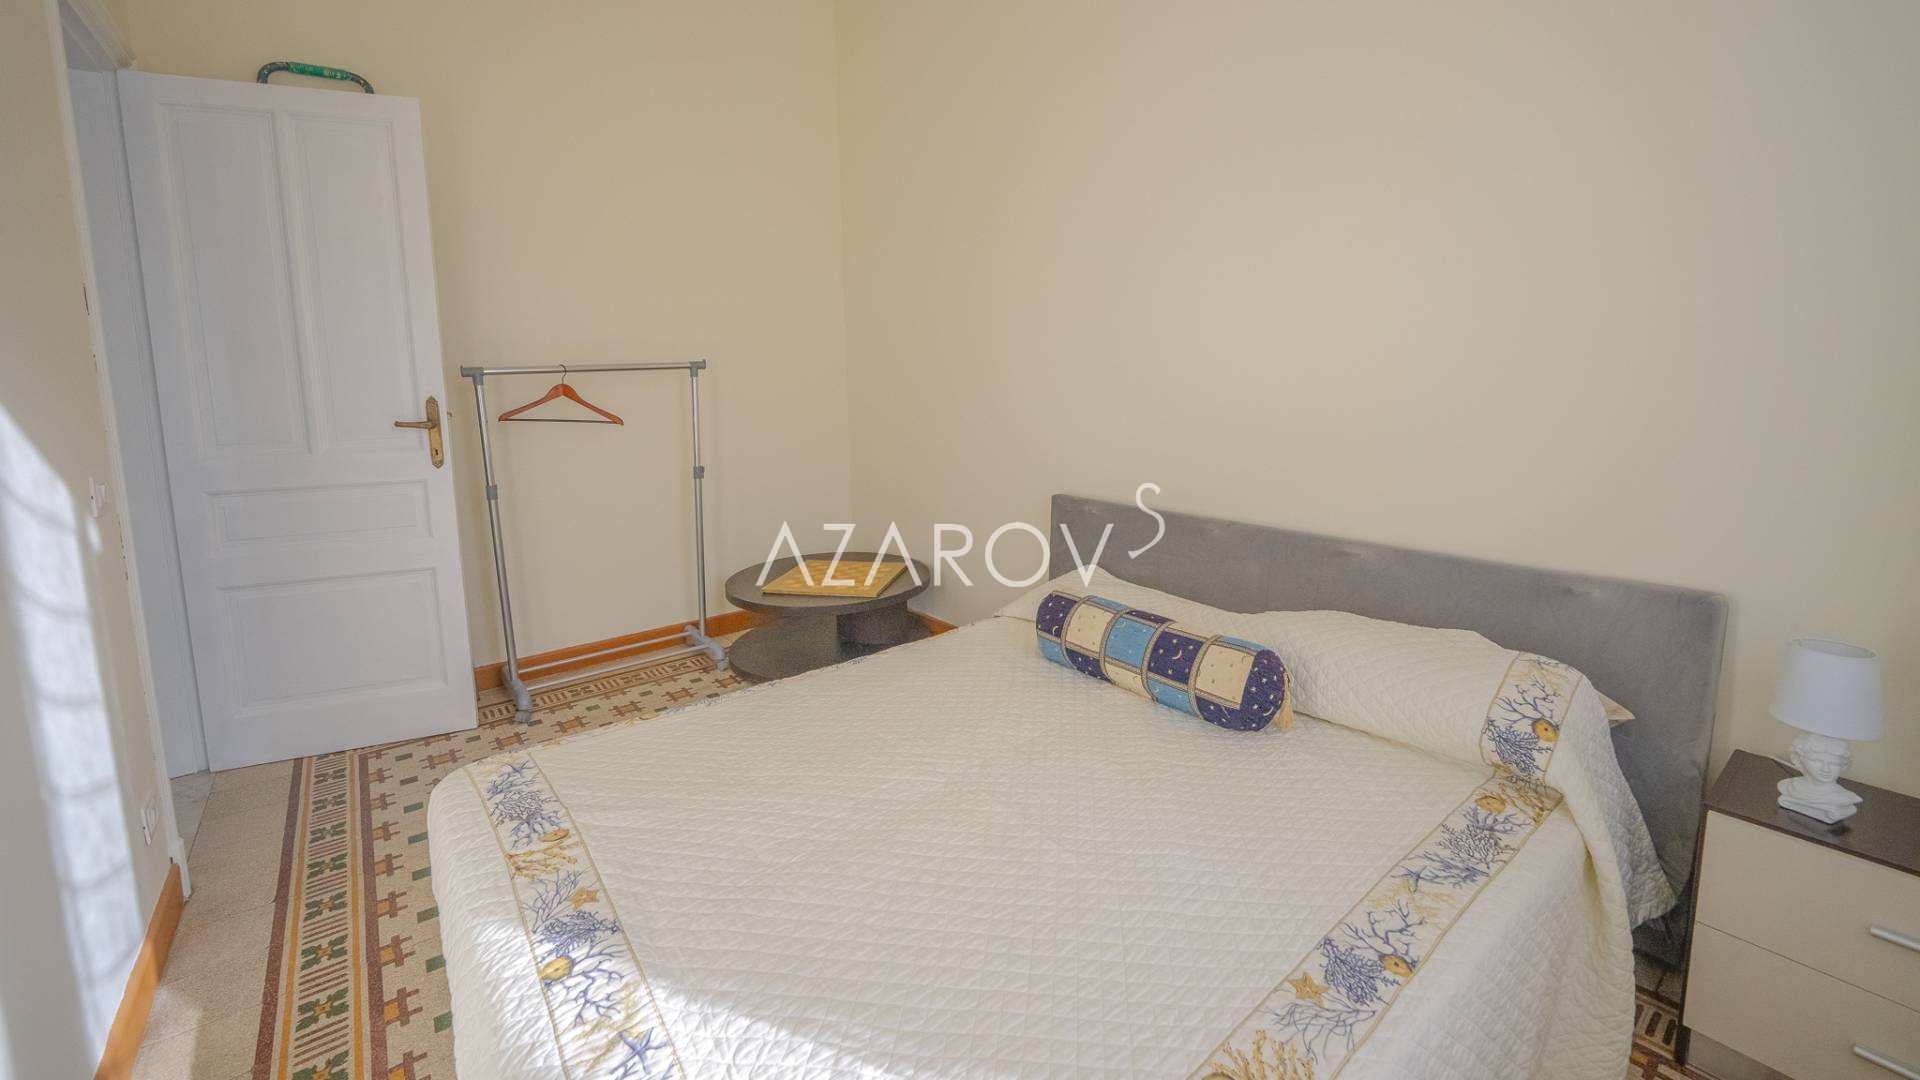 Four-room apartment in Sanremo 120 sq m